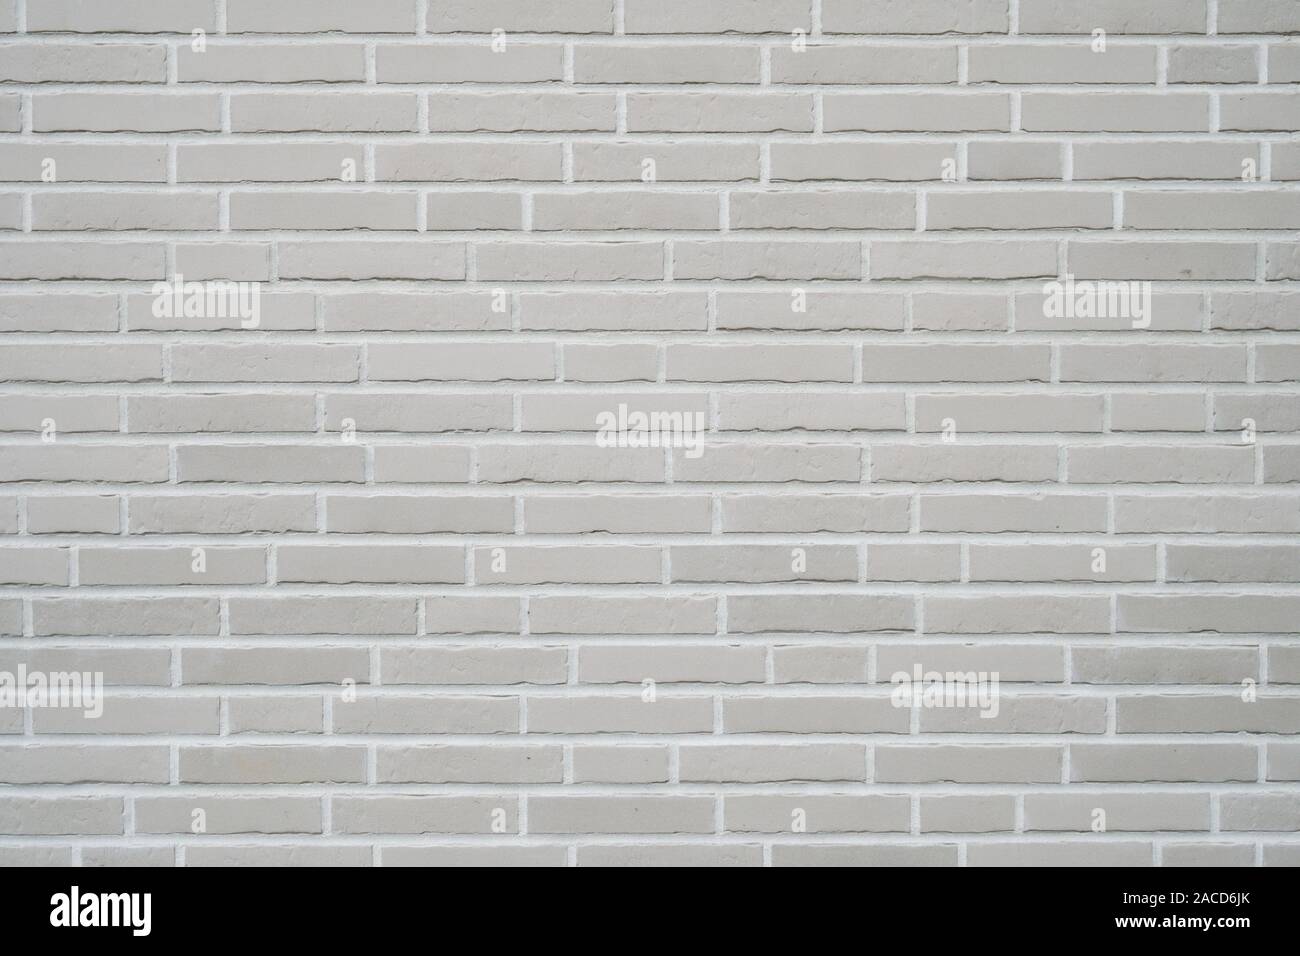 Mur de briques de clinker gris - Fond d'extérieur de bâtiment moderne en brique avec revêtement de glissement Banque D'Images